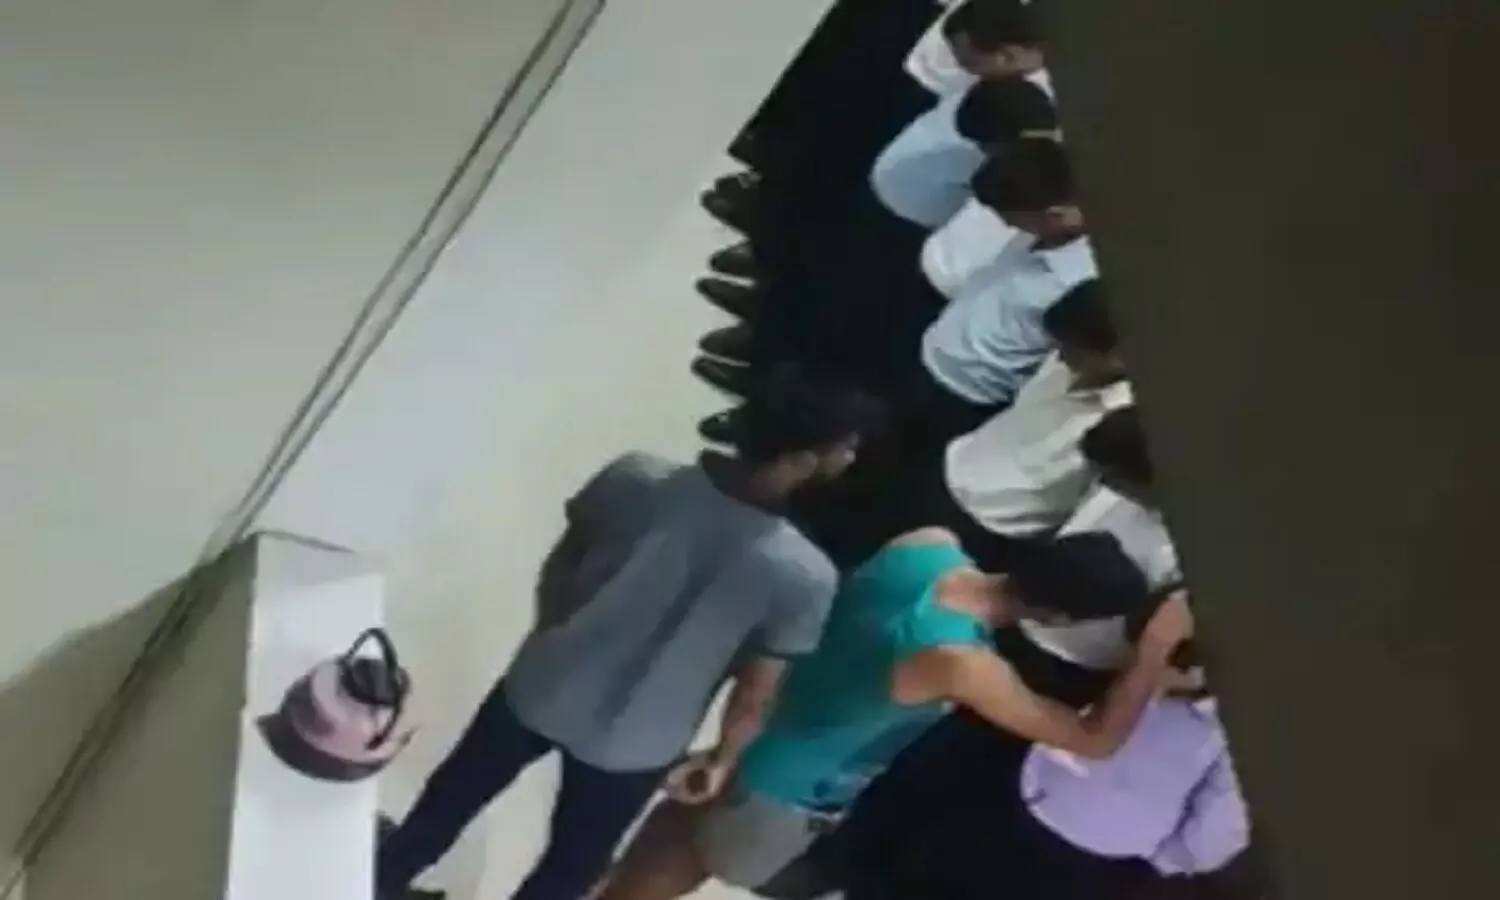 Ratlam Ragging Video: एमपी में नही थम रही रैगिंग, इंदौर के बाद रतलाम मेडिकल कॉलेज से मामला आया सामने, जूनियर्स को लगाएं जा रहे थप्पड़